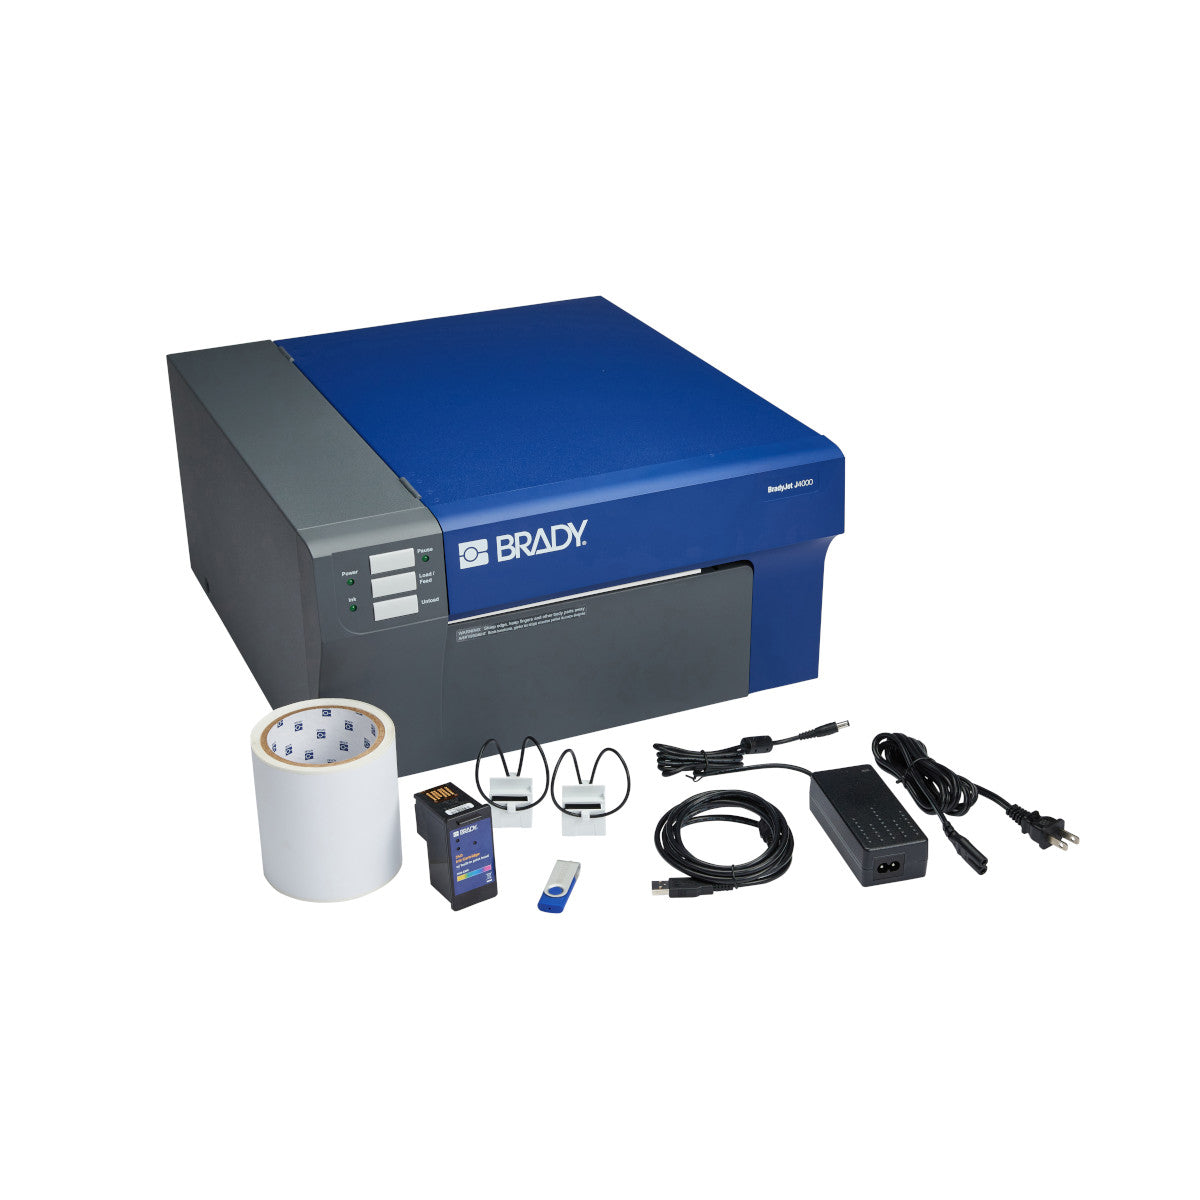 310389 - Stampante a colori per etichette BradyJet J4000 con software Identificazione prodotti e fili